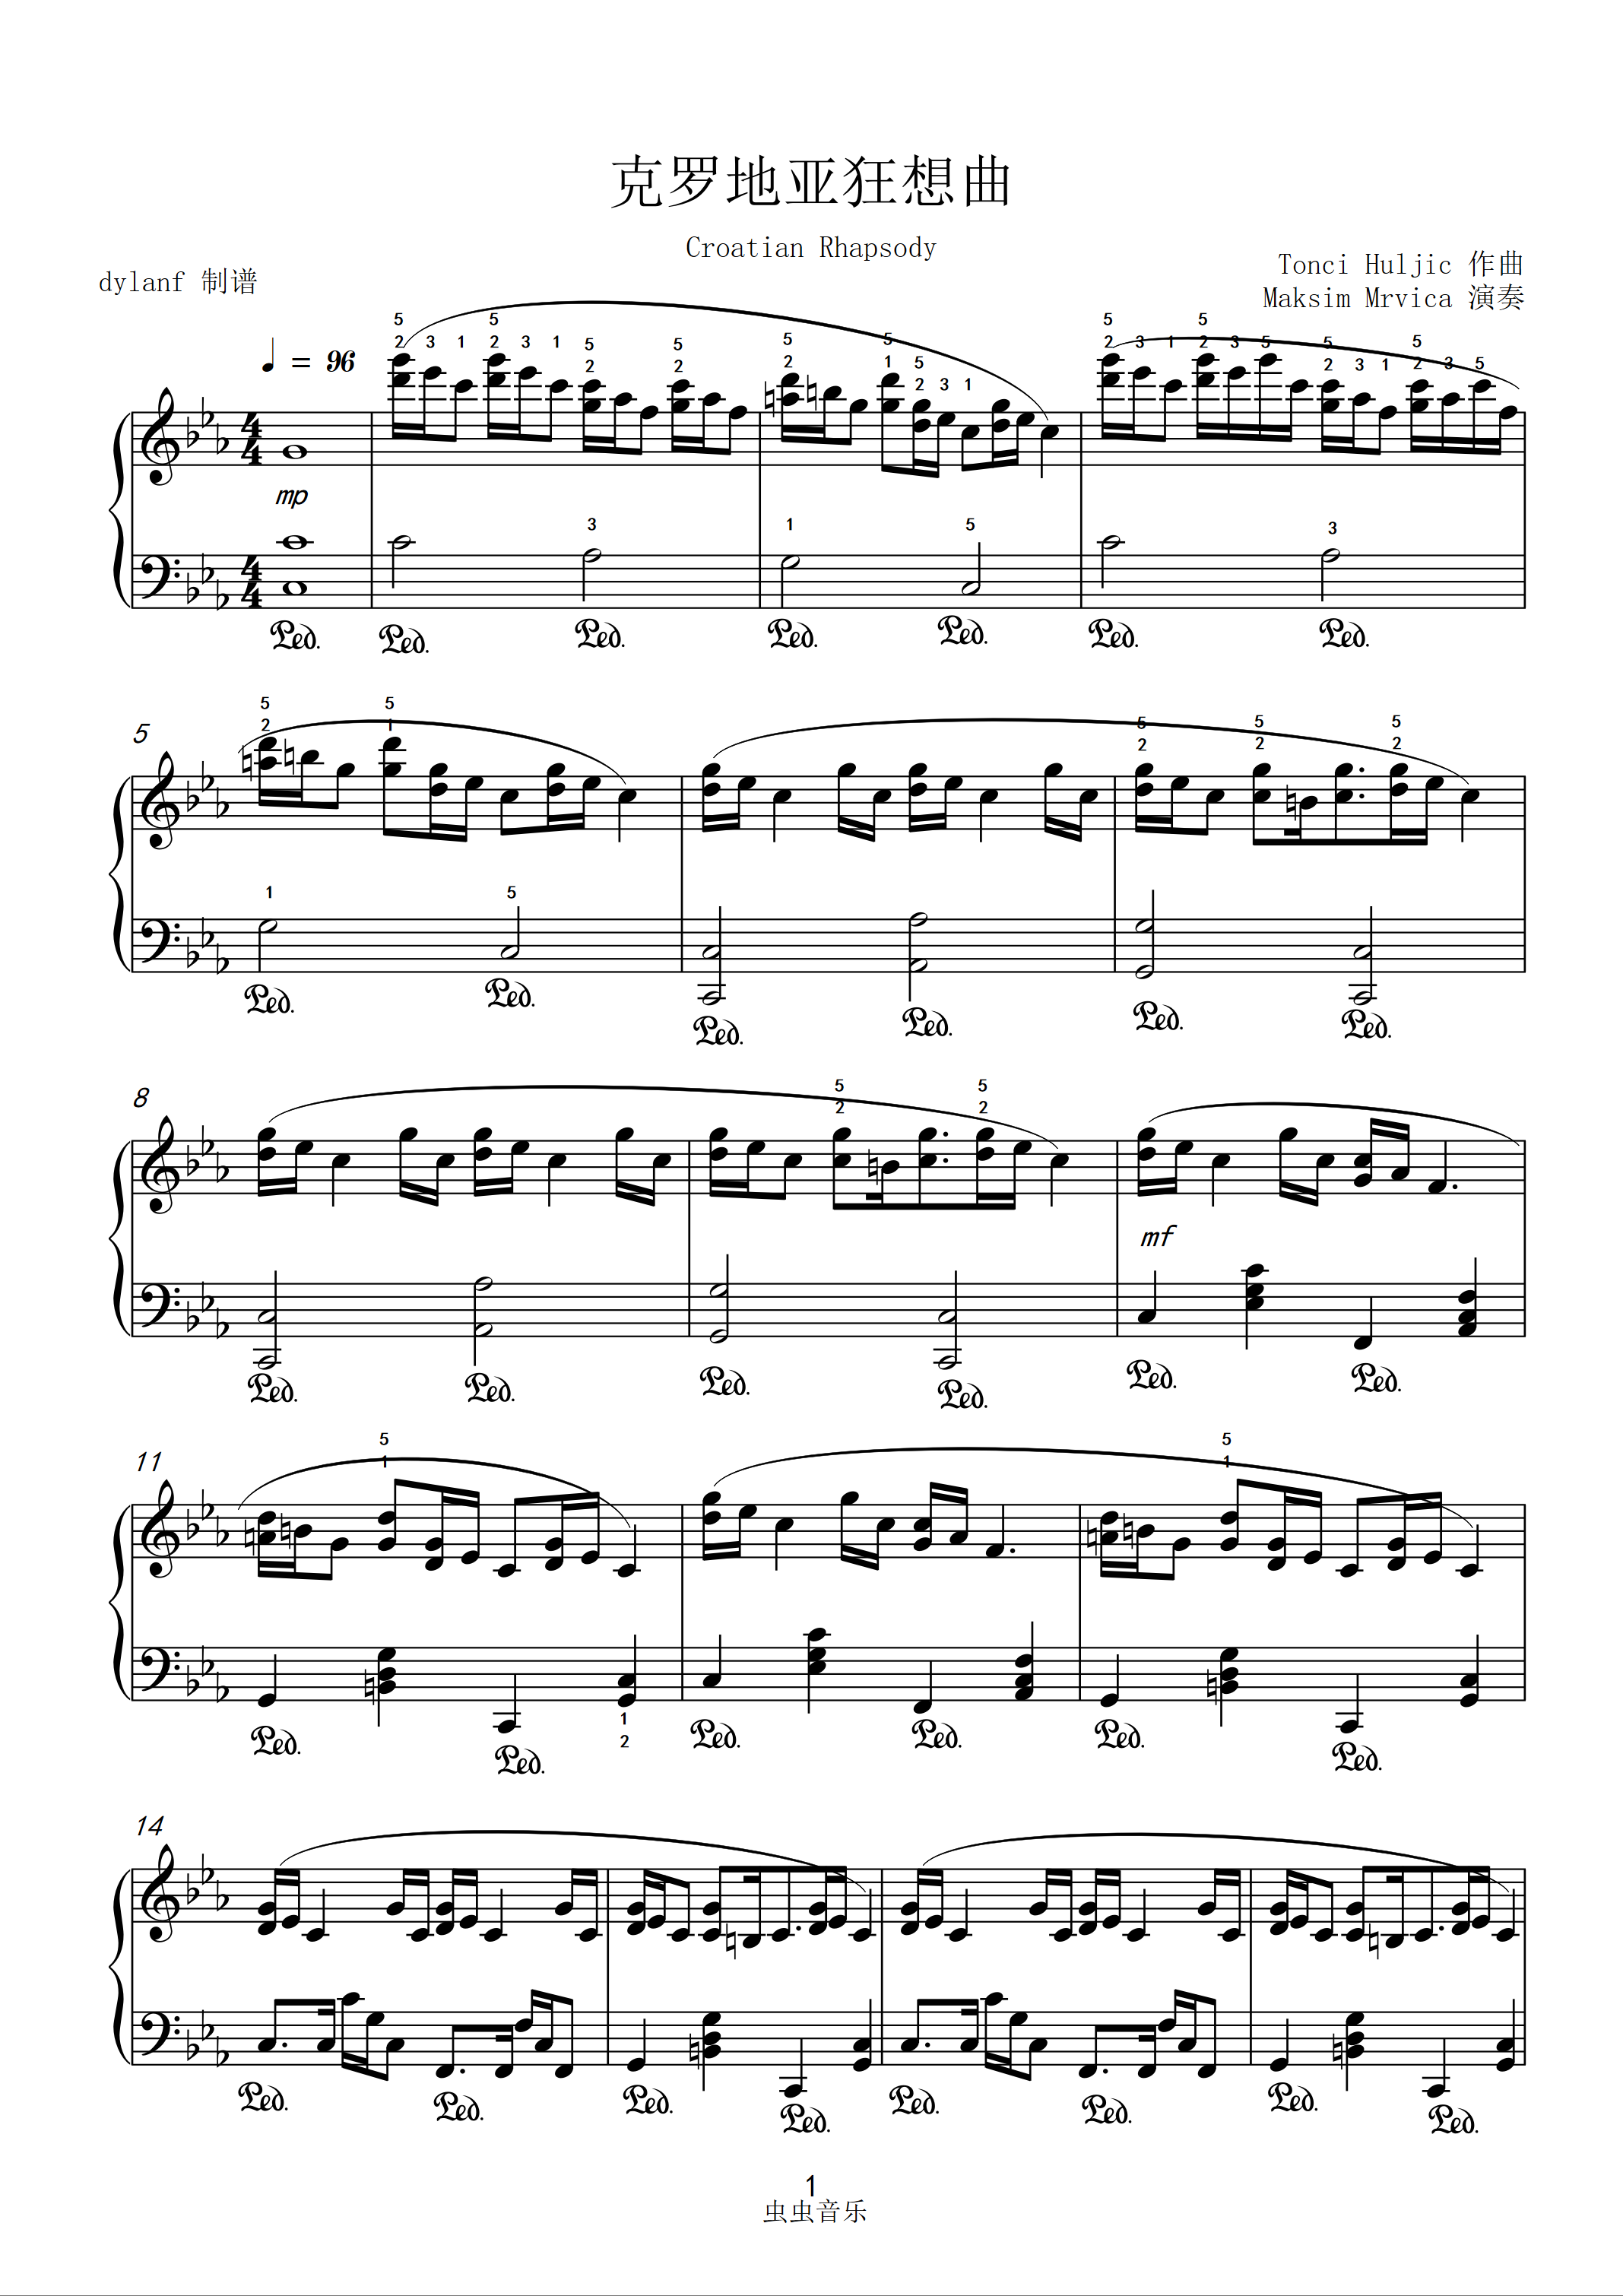 克罗地亚狂想曲 Croatian Rhapsody - 马克西姆钢琴谱-马克西姆钢琴谱-环球钢琴网